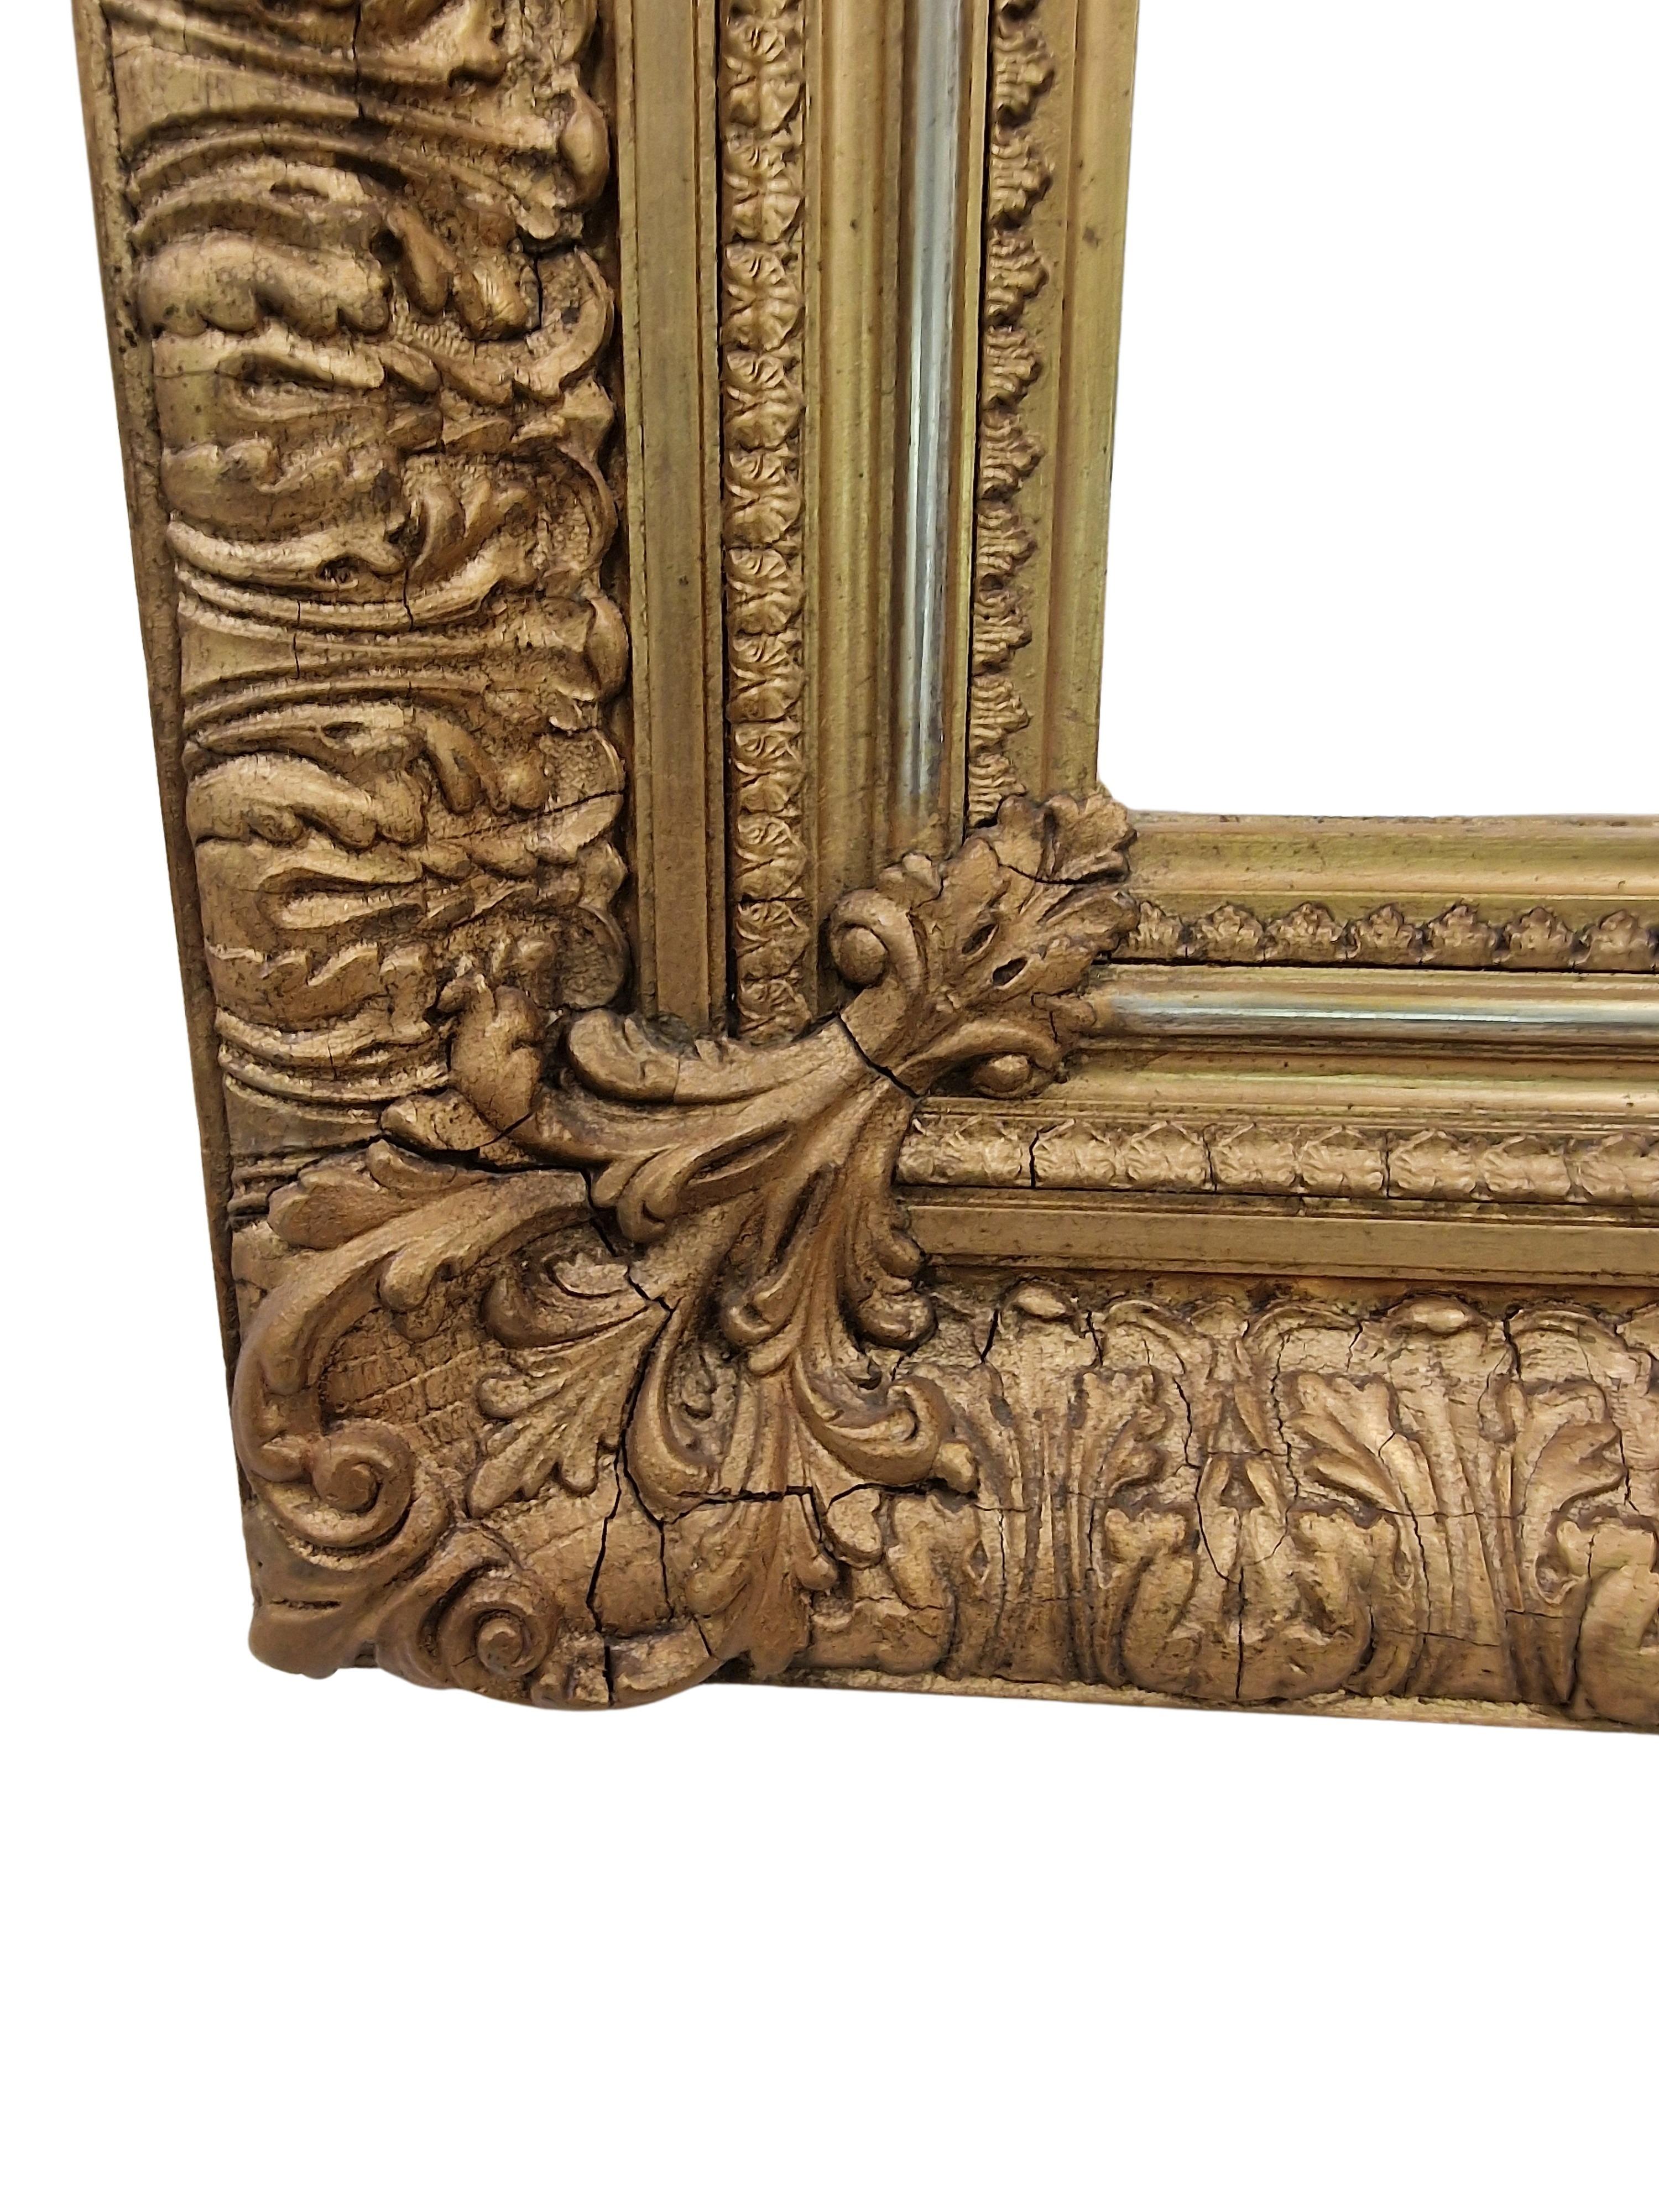 Prächtiger Wandspiegel, Rahmen, ein beeindruckendes Original aus den 1880er Jahren, hergestellt in Österreich. 

Dieses beeindruckende handgefertigte Objekt besteht aus Holz mit einer Stuckauflage, die äußerst prächtig gearbeitet ist. Darüber